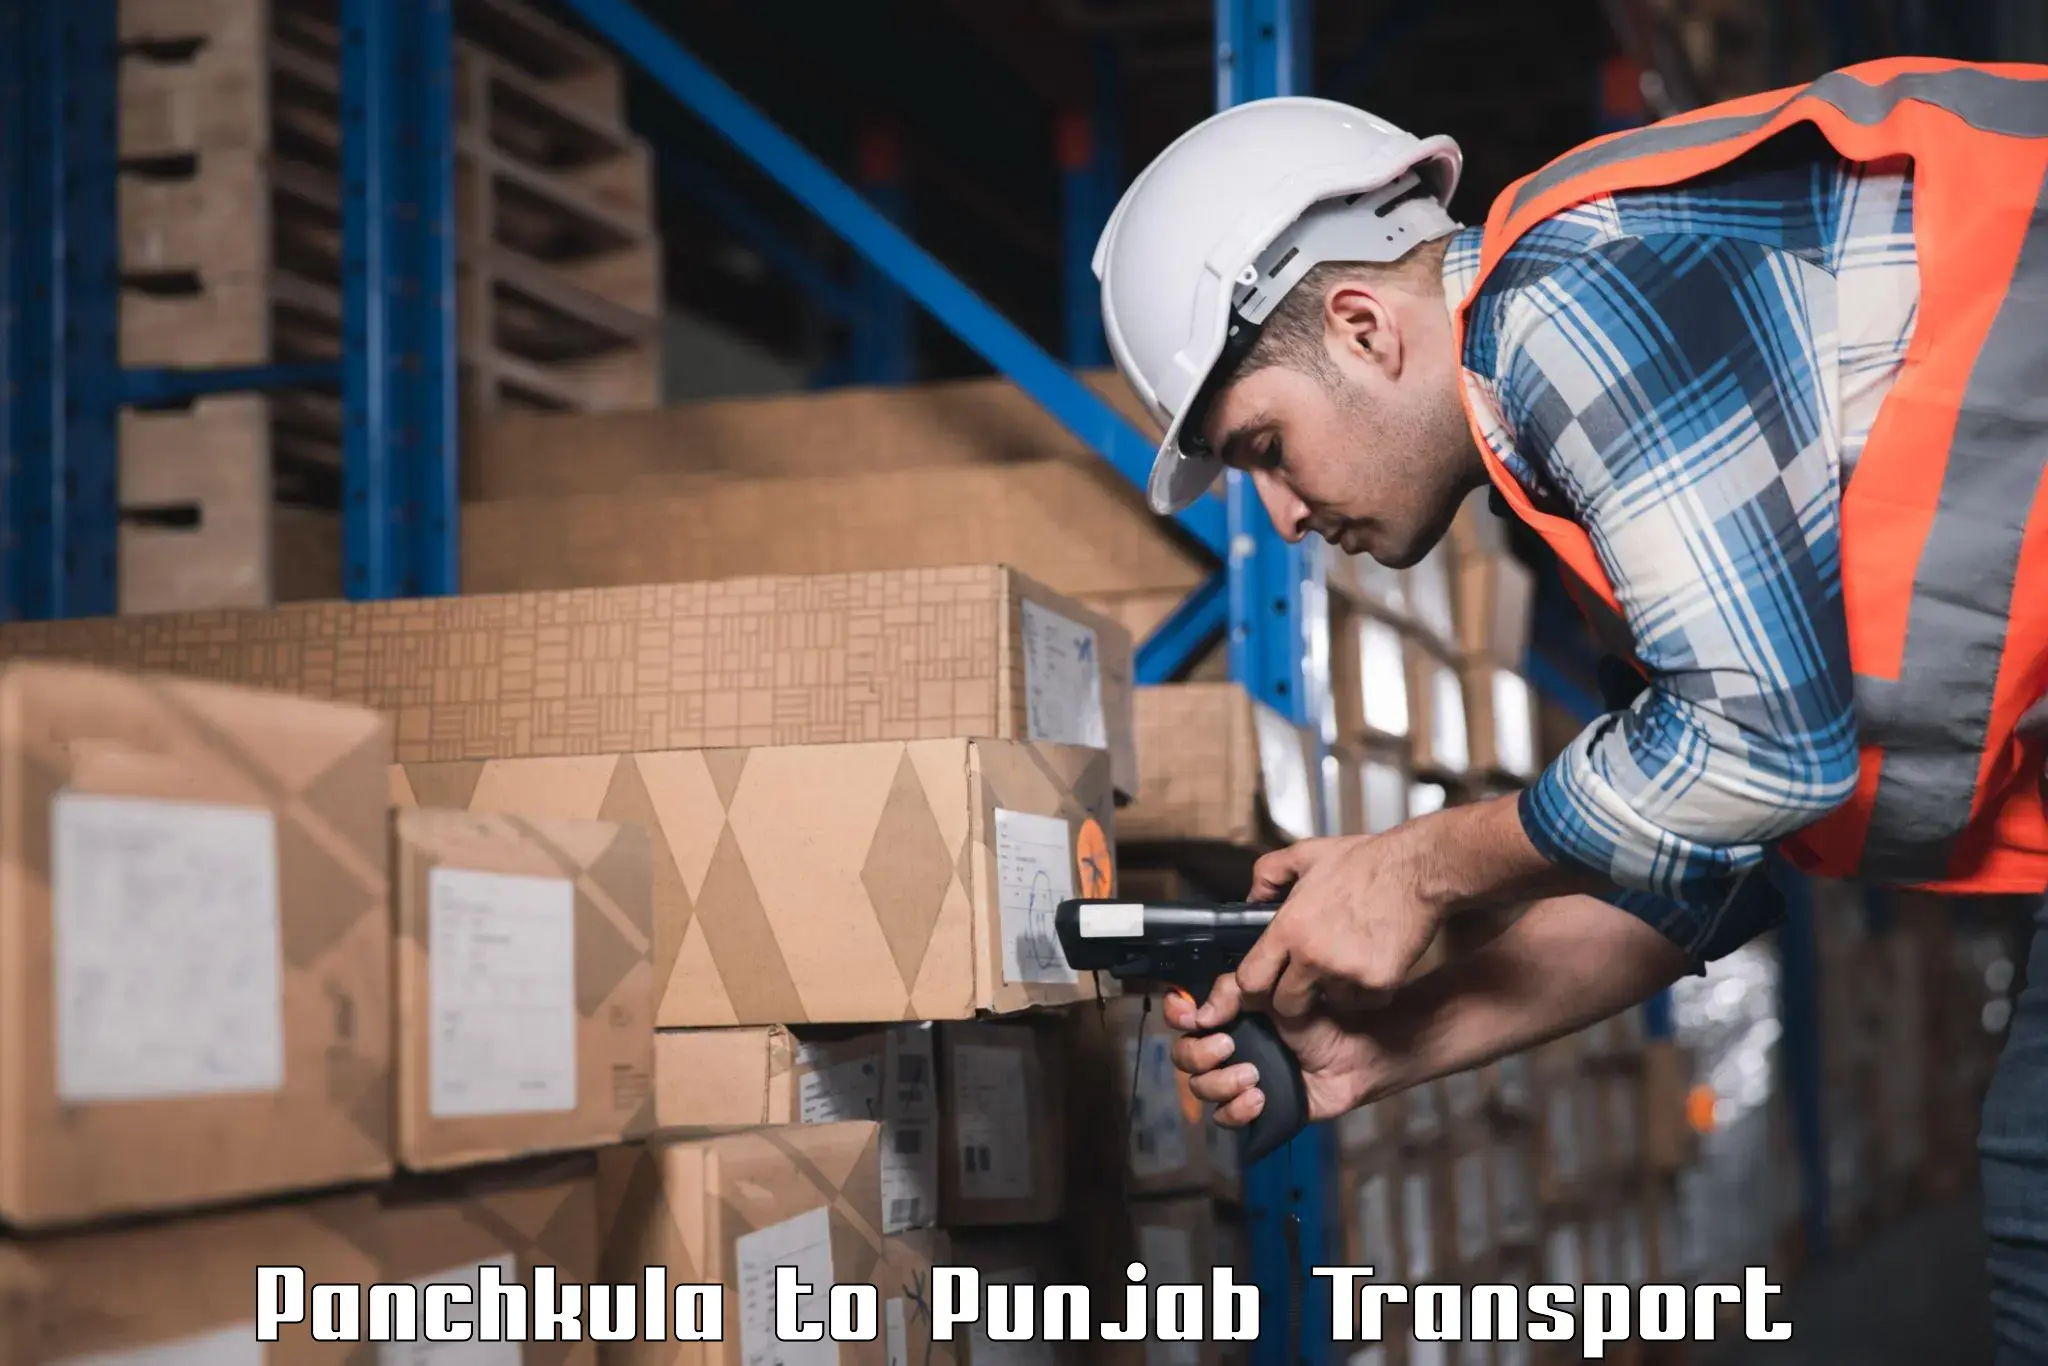 Nearest transport service Panchkula to Punjab